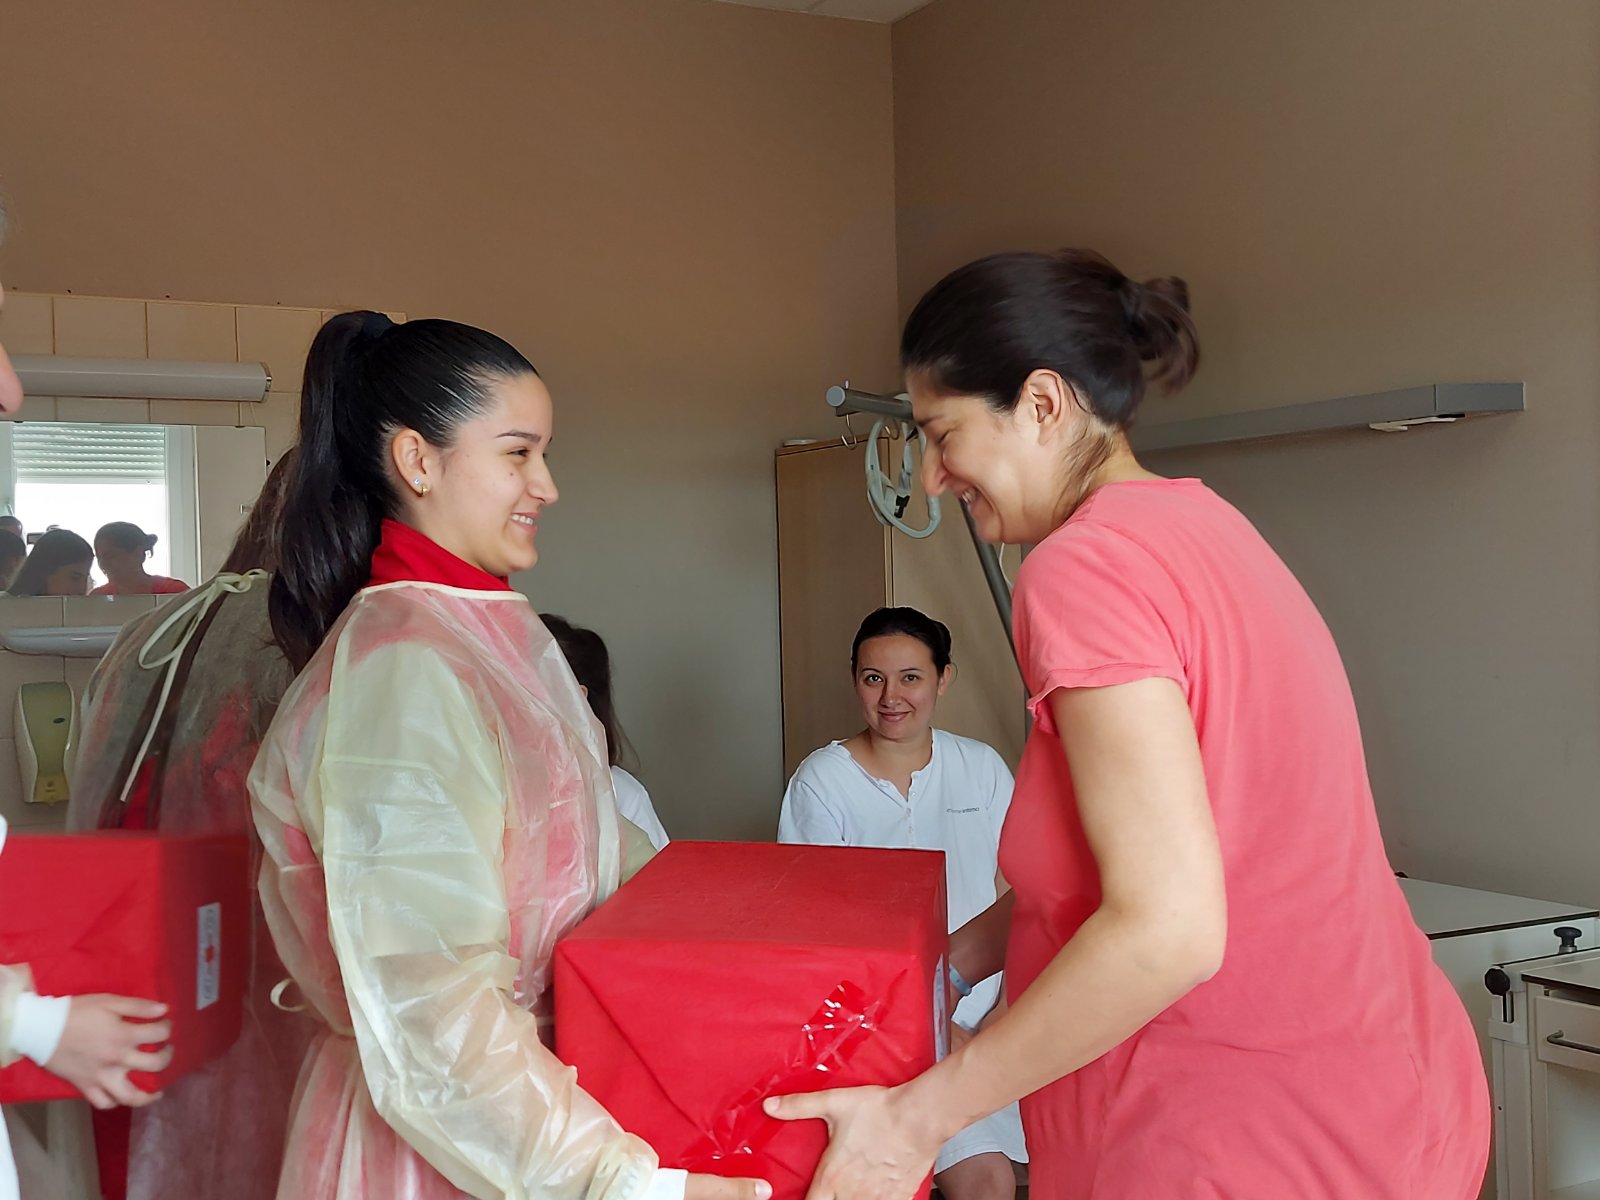 Bolnica Bijeljina: Pokloni za majke i bebe u Nedjelji Crvenog krsta